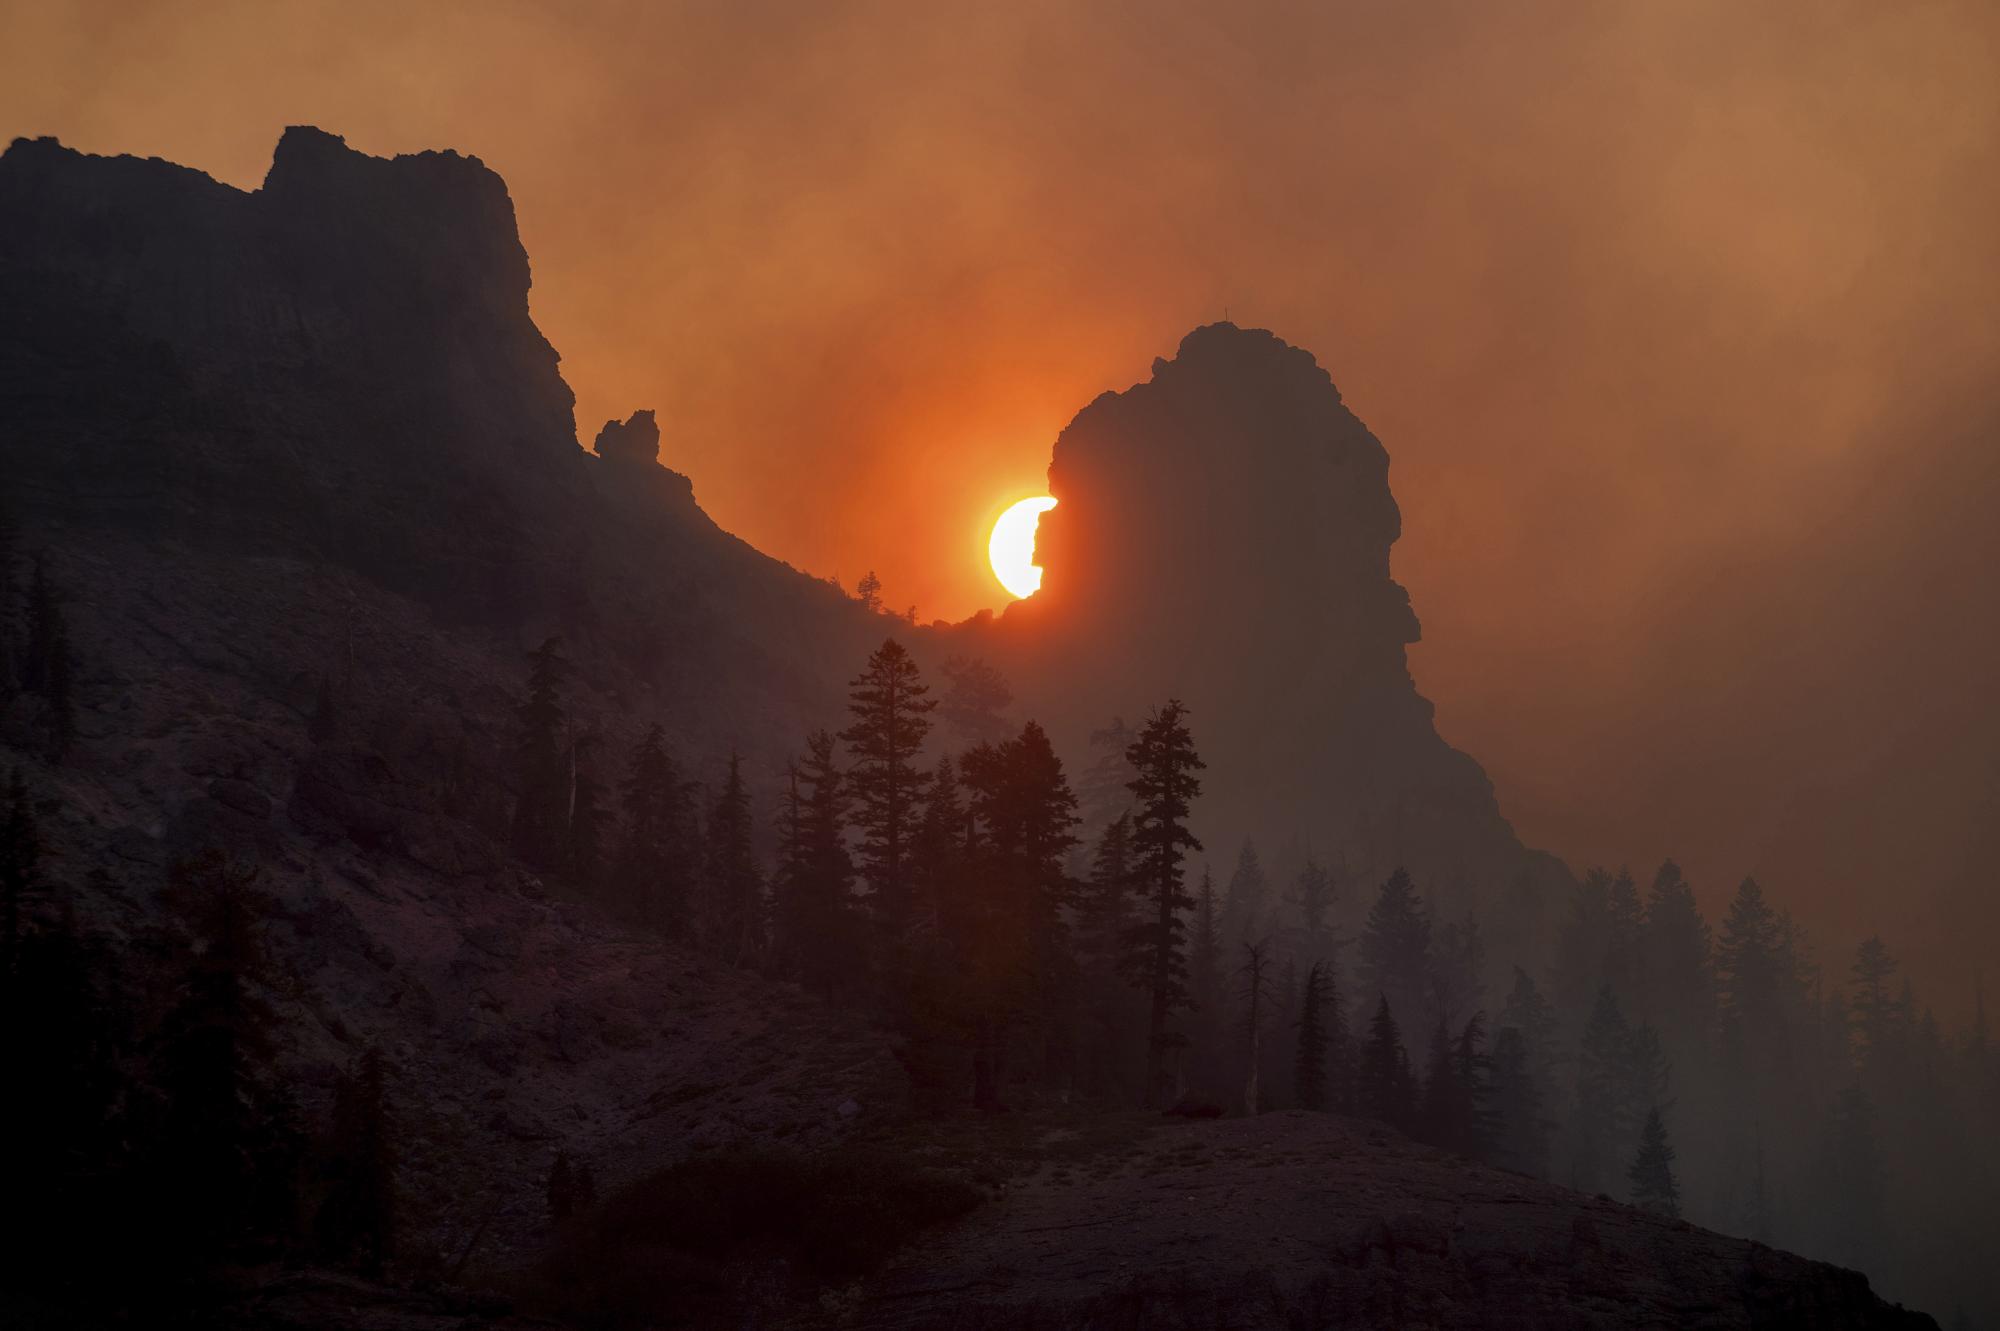 El humo del incendio de Caldor flota sobre una cresta cerca de la estación de esquí Kirkwood en el Bosque Nacional Eldorado, California, el martes 31 de agosto de 2021 (AP Photo / Noah Berger).